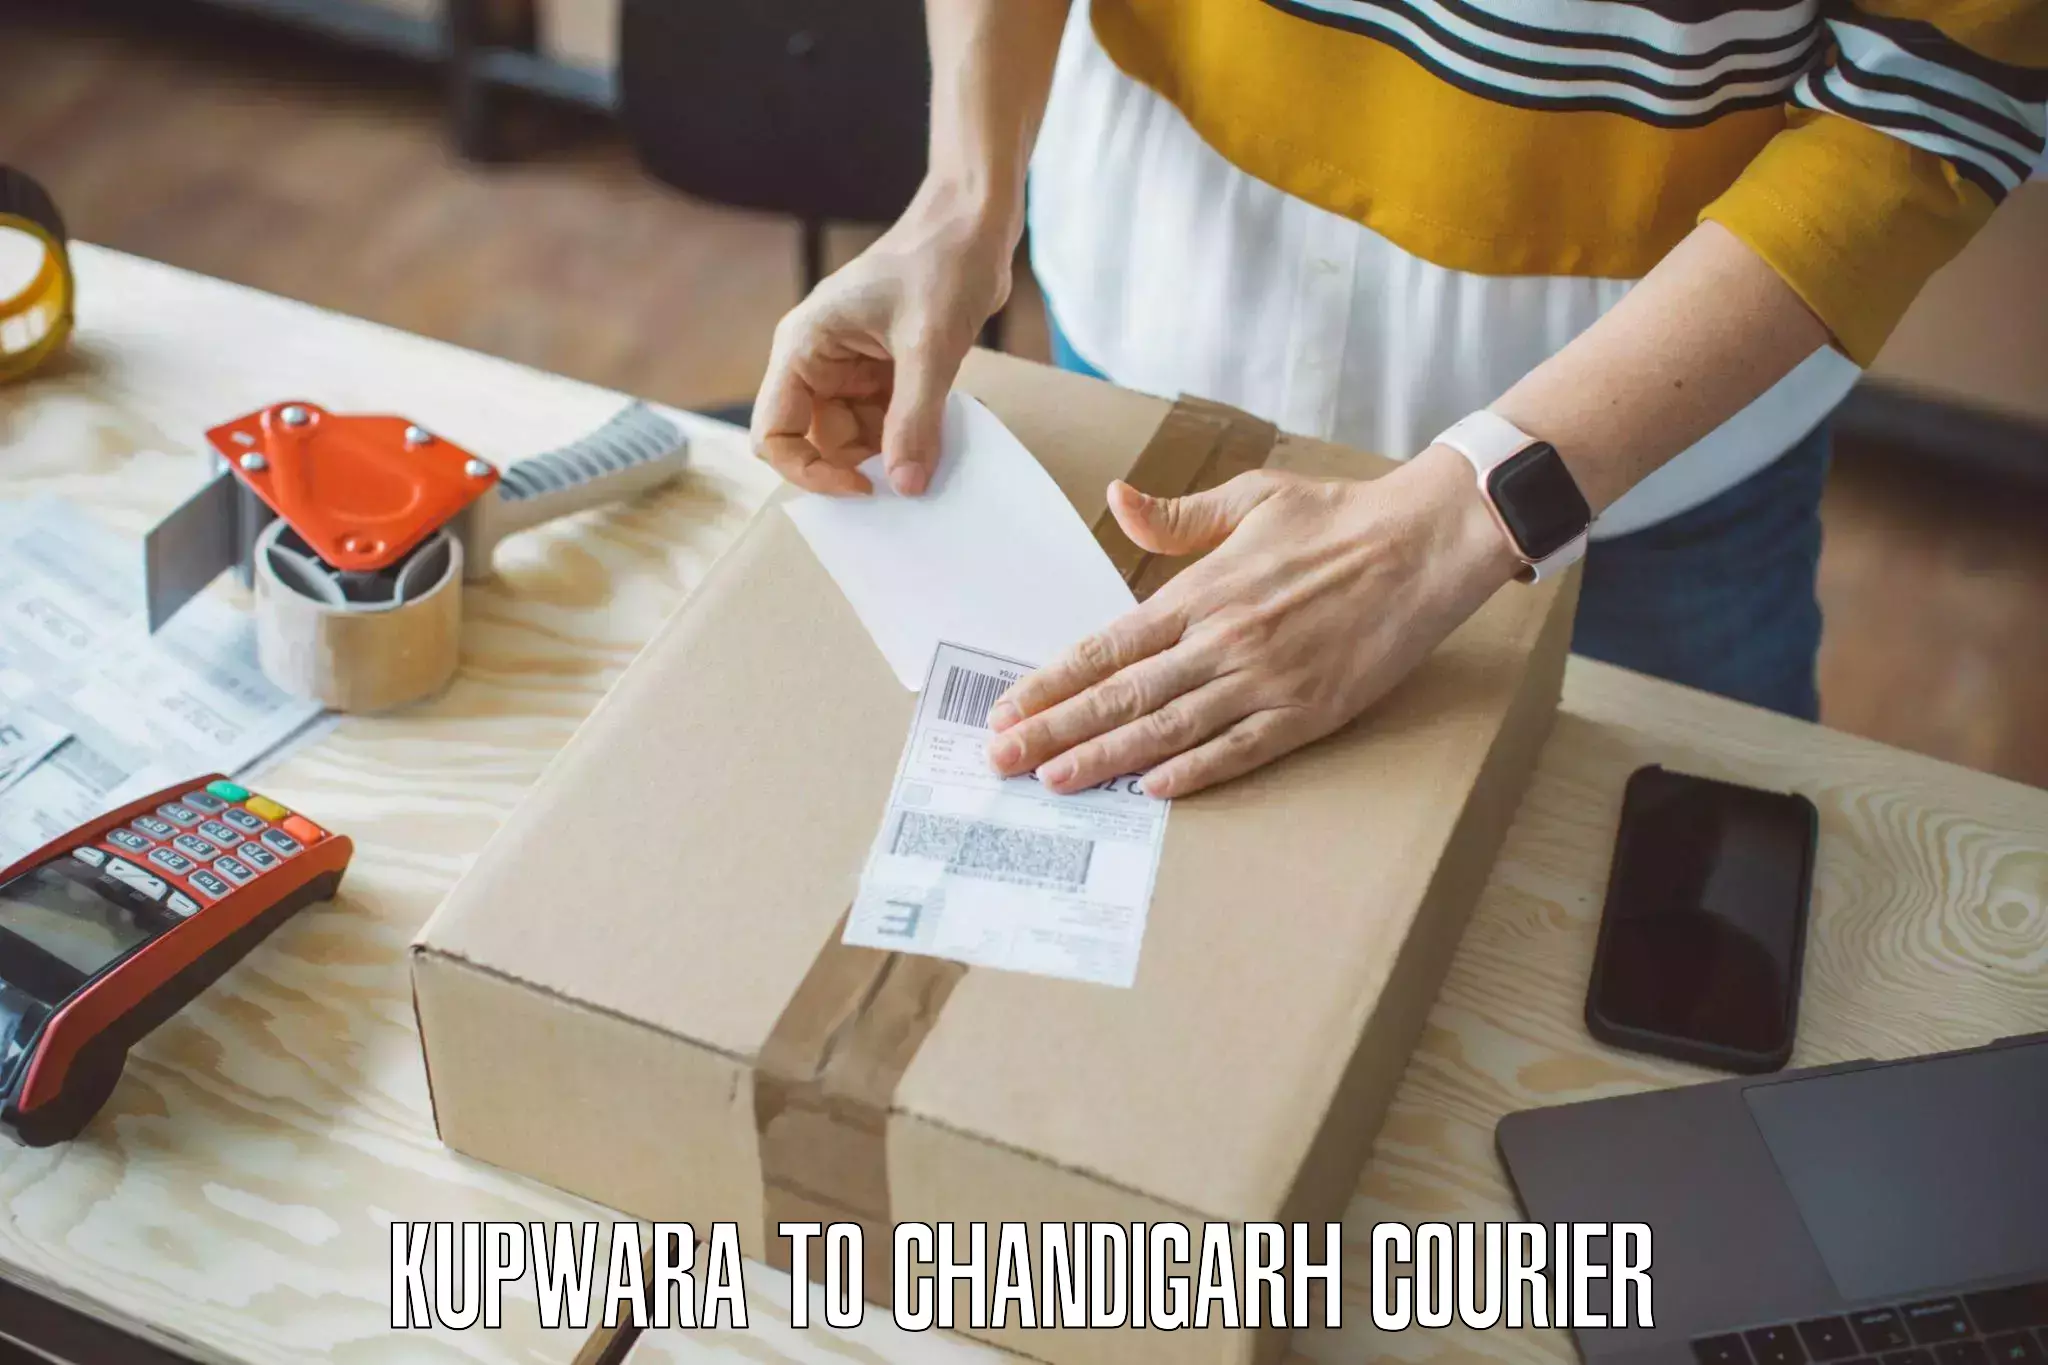 Furniture transport experts Kupwara to Chandigarh